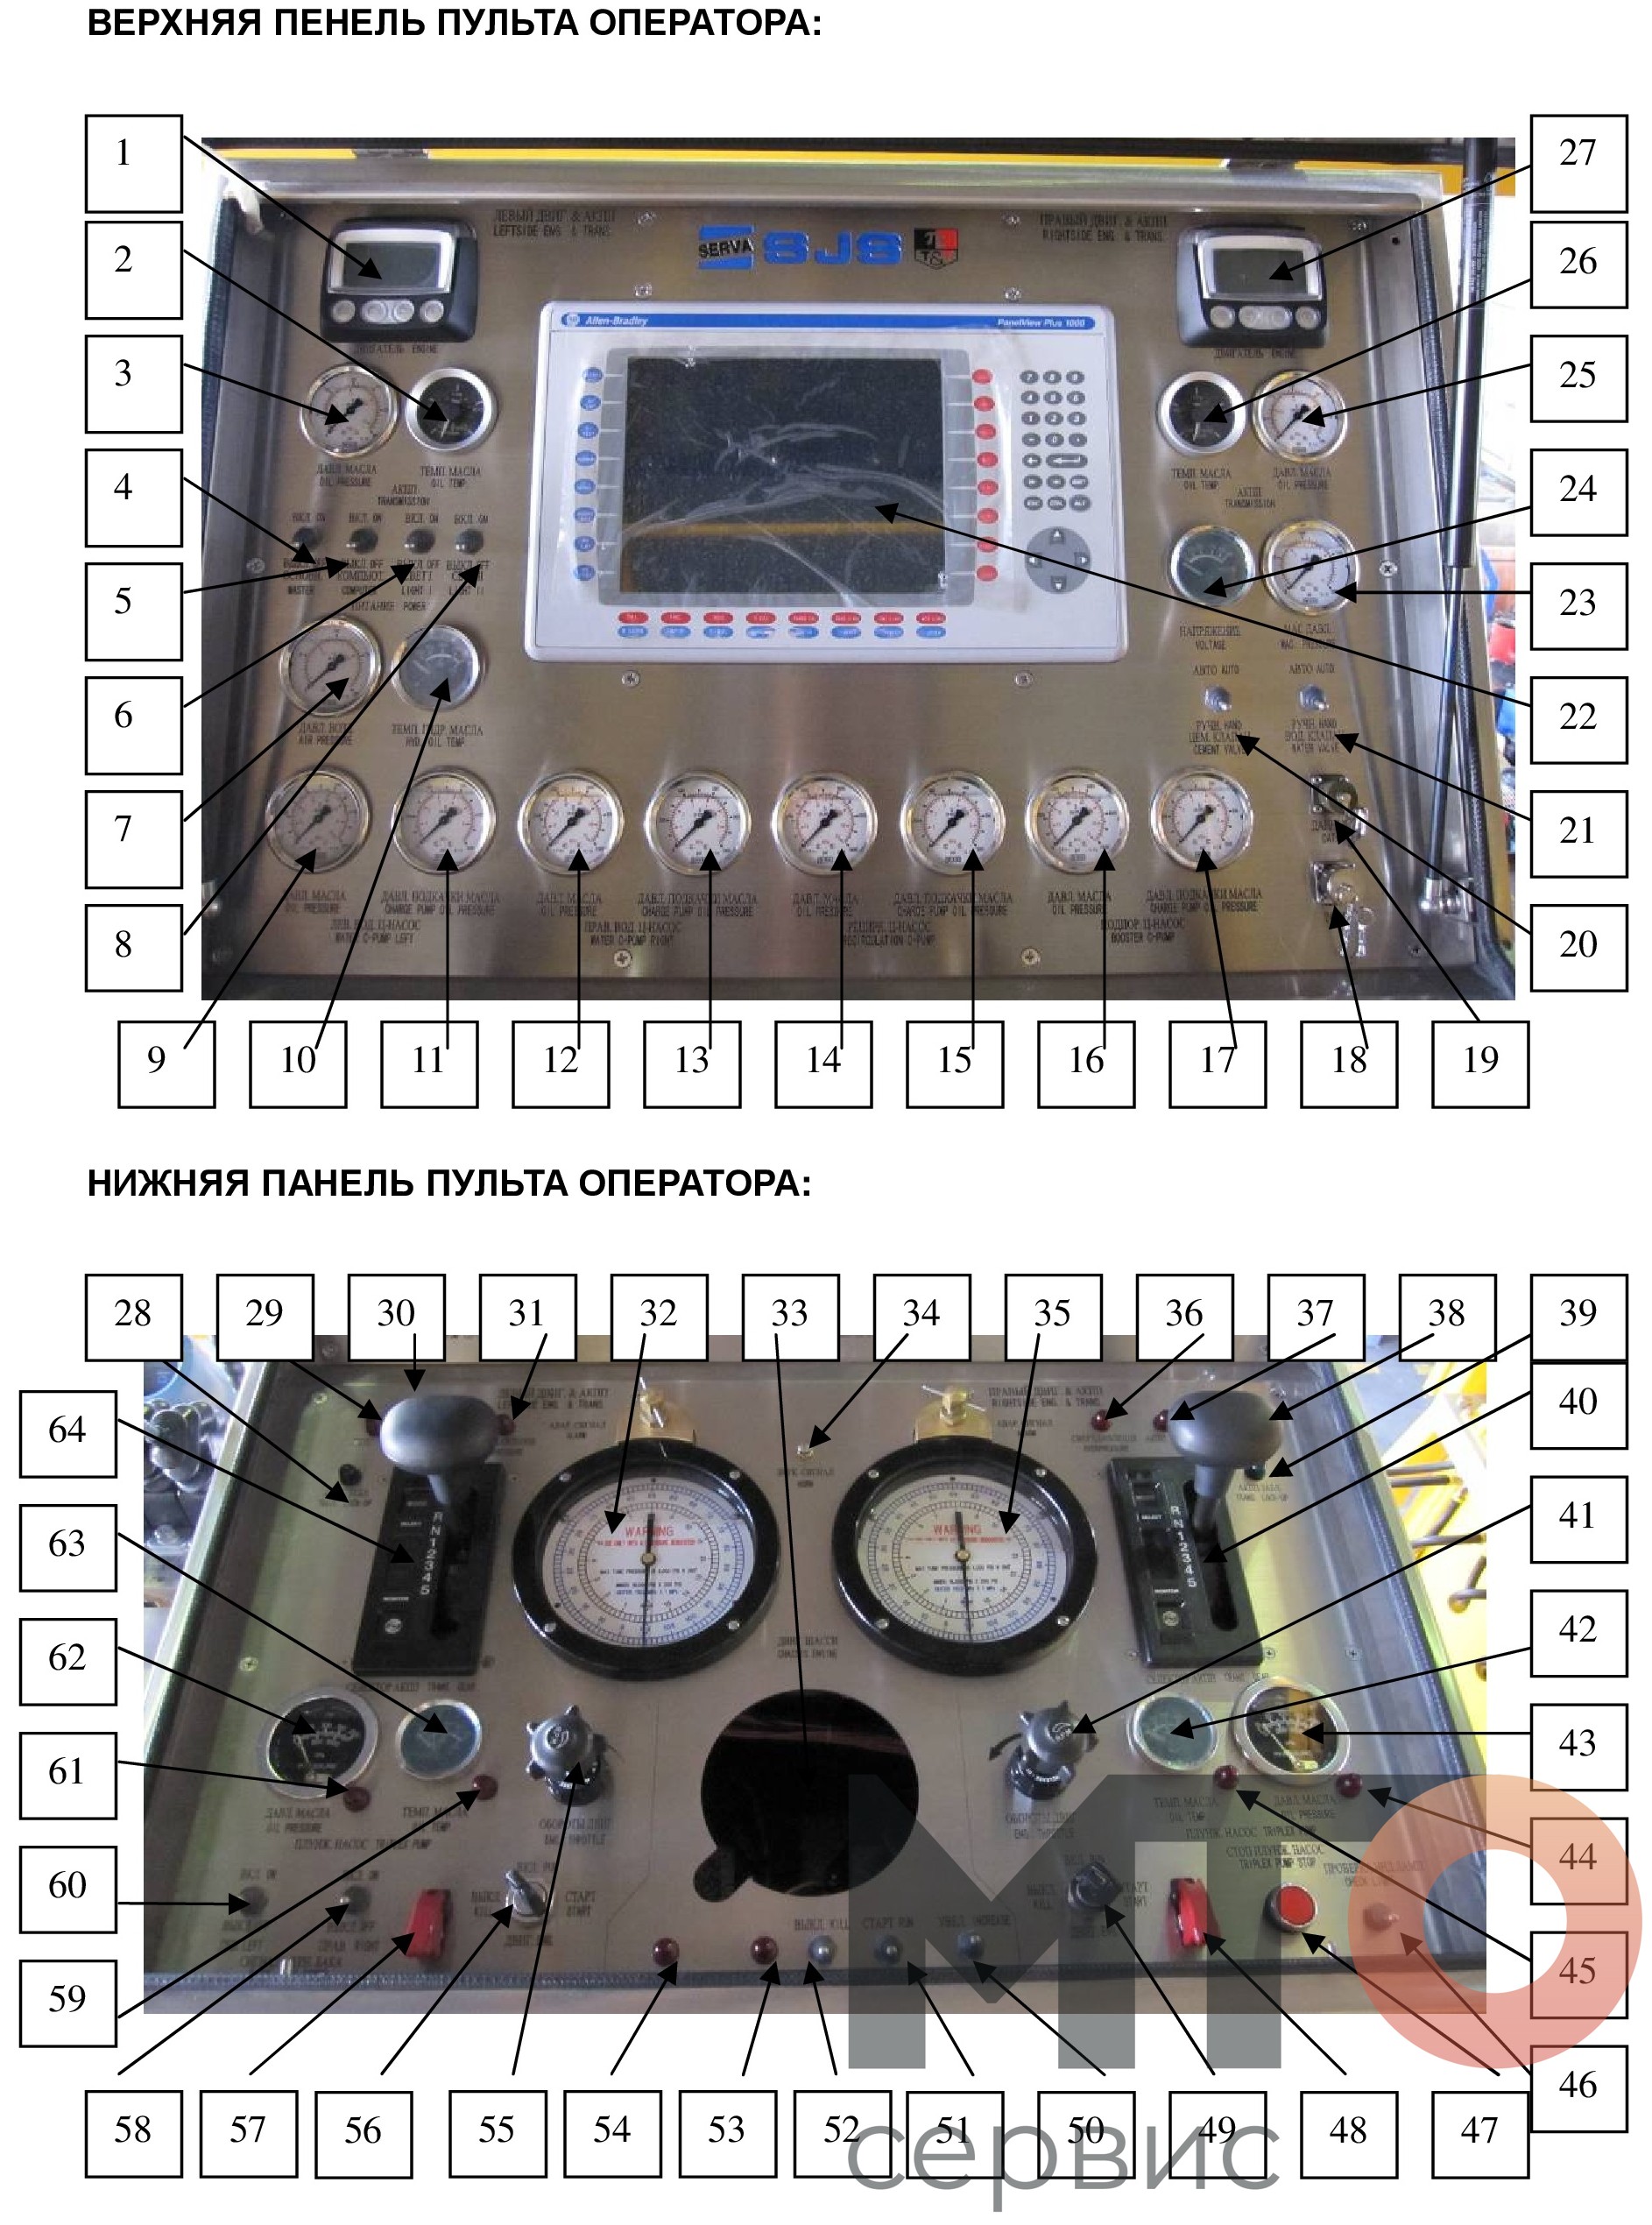 Пульт управления Control panel PCT-621-A